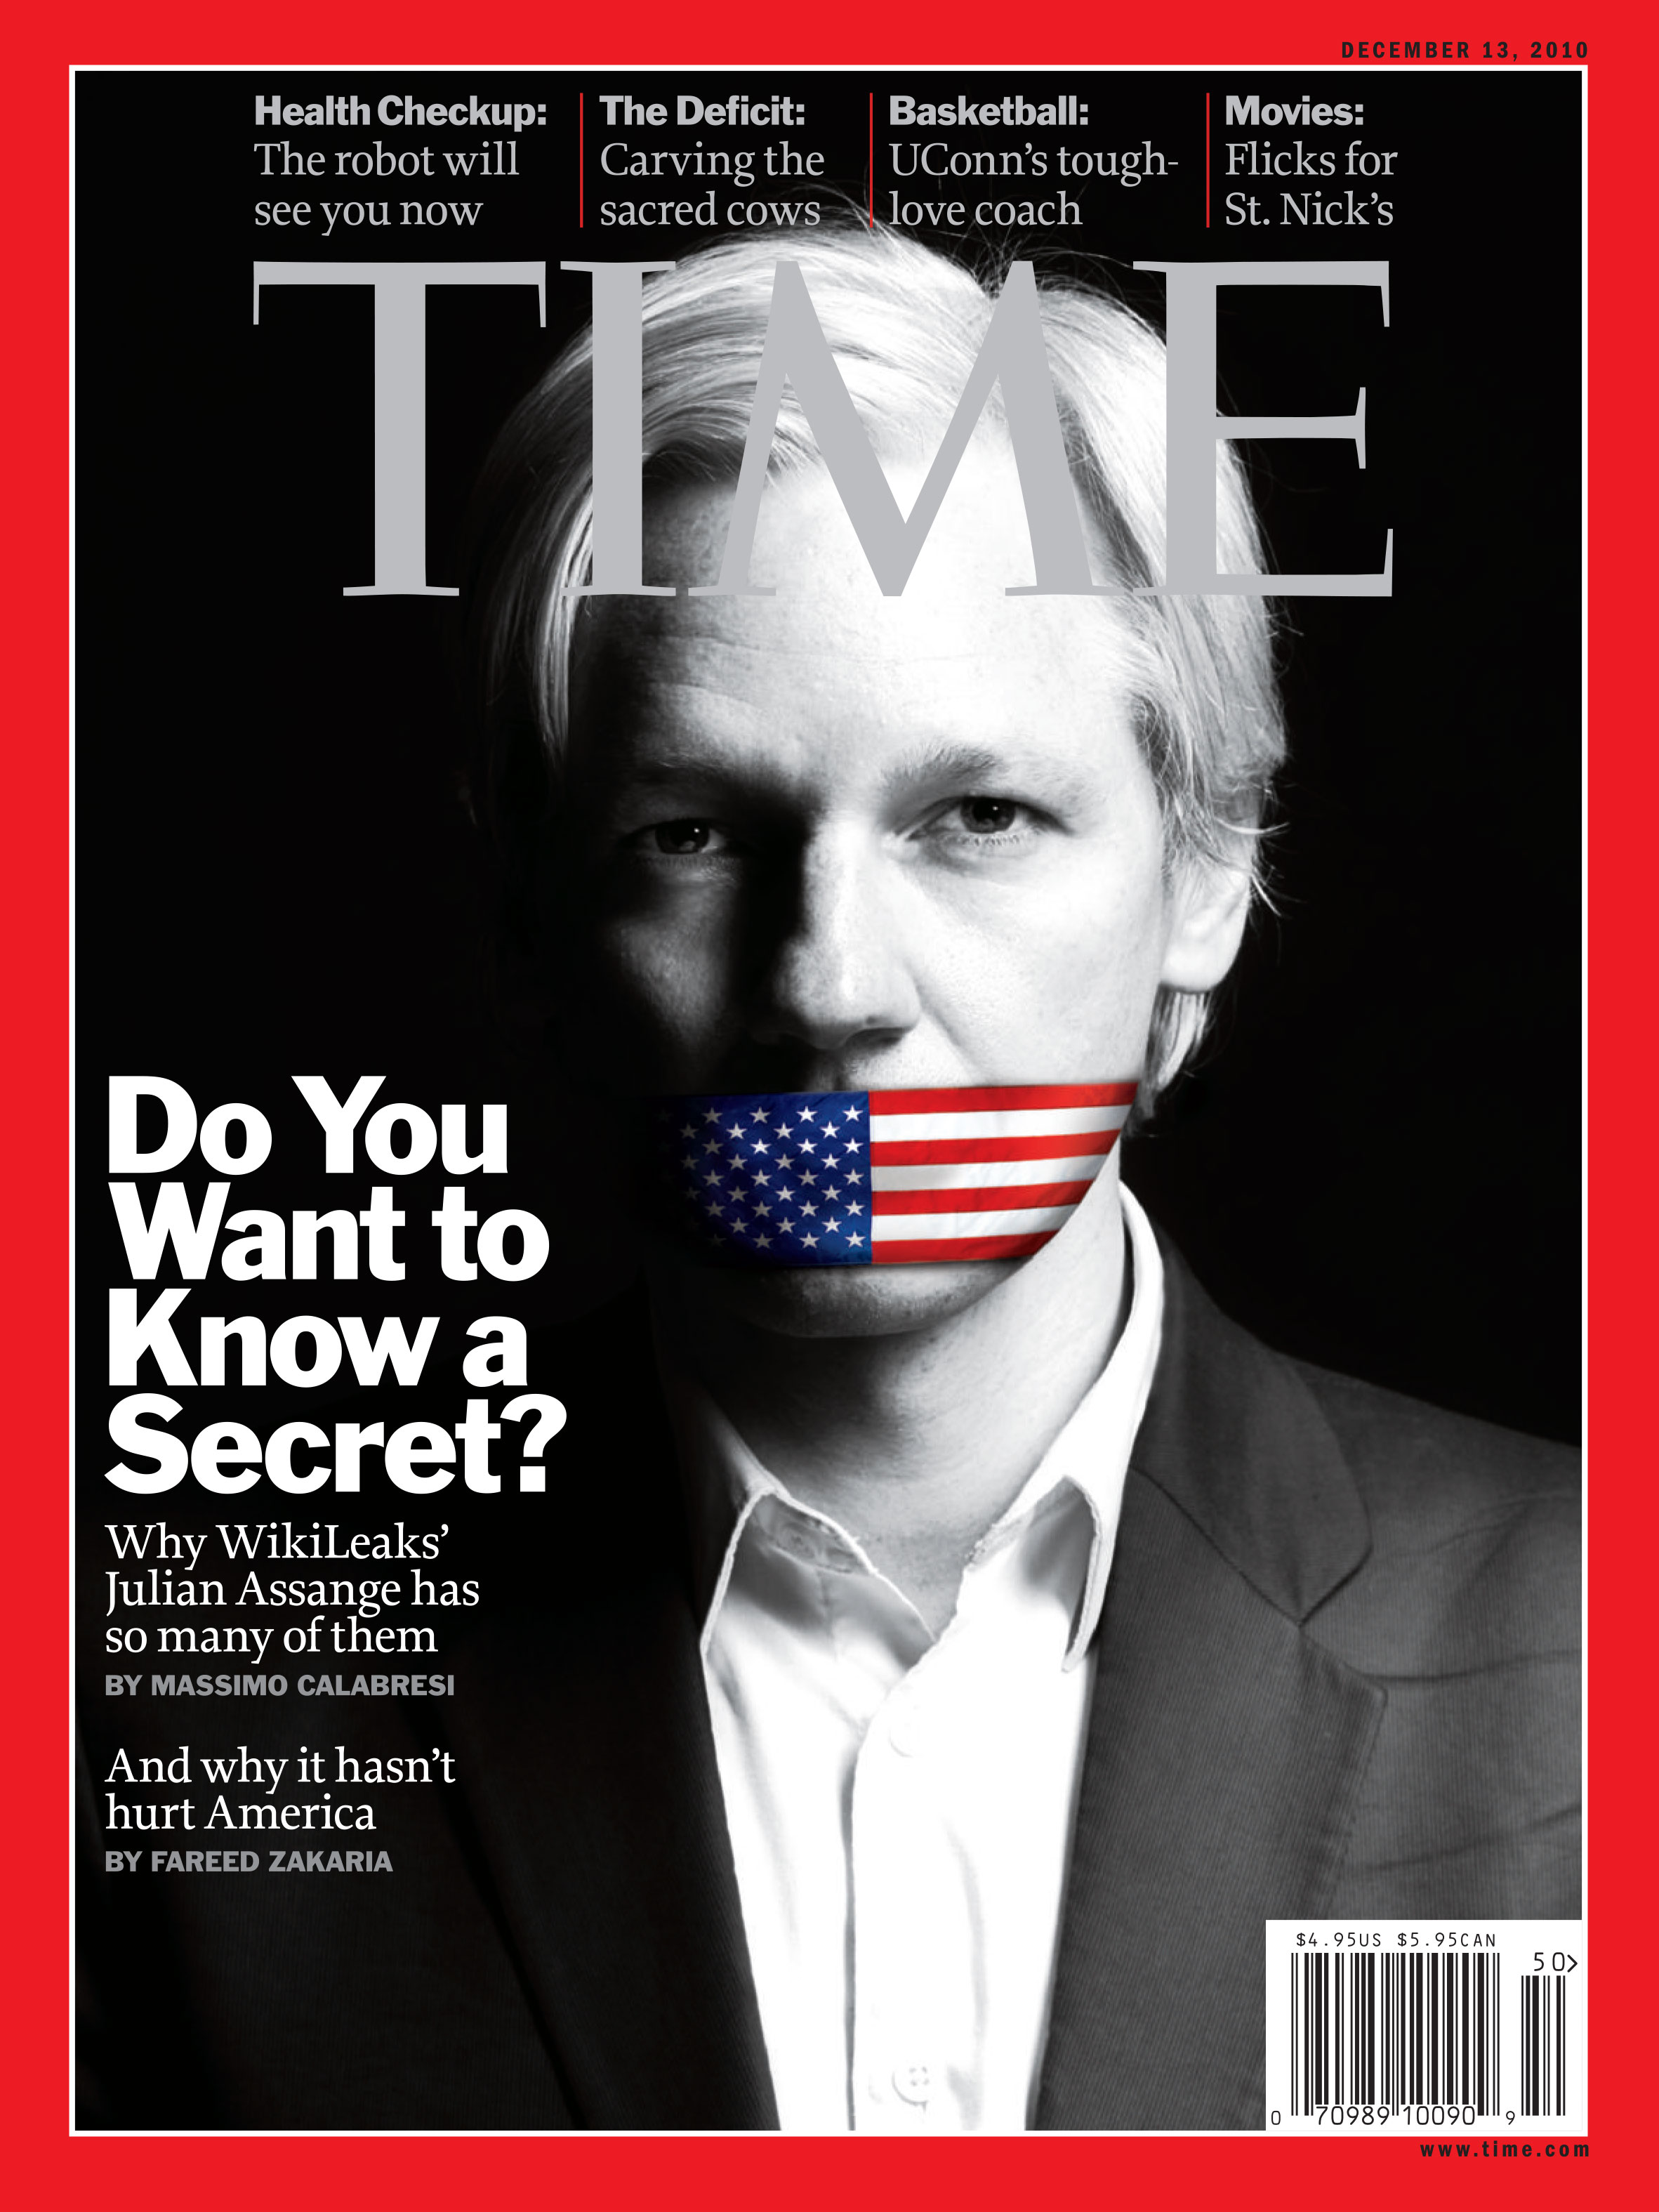 wikileaks-julian-assange-cover-2010